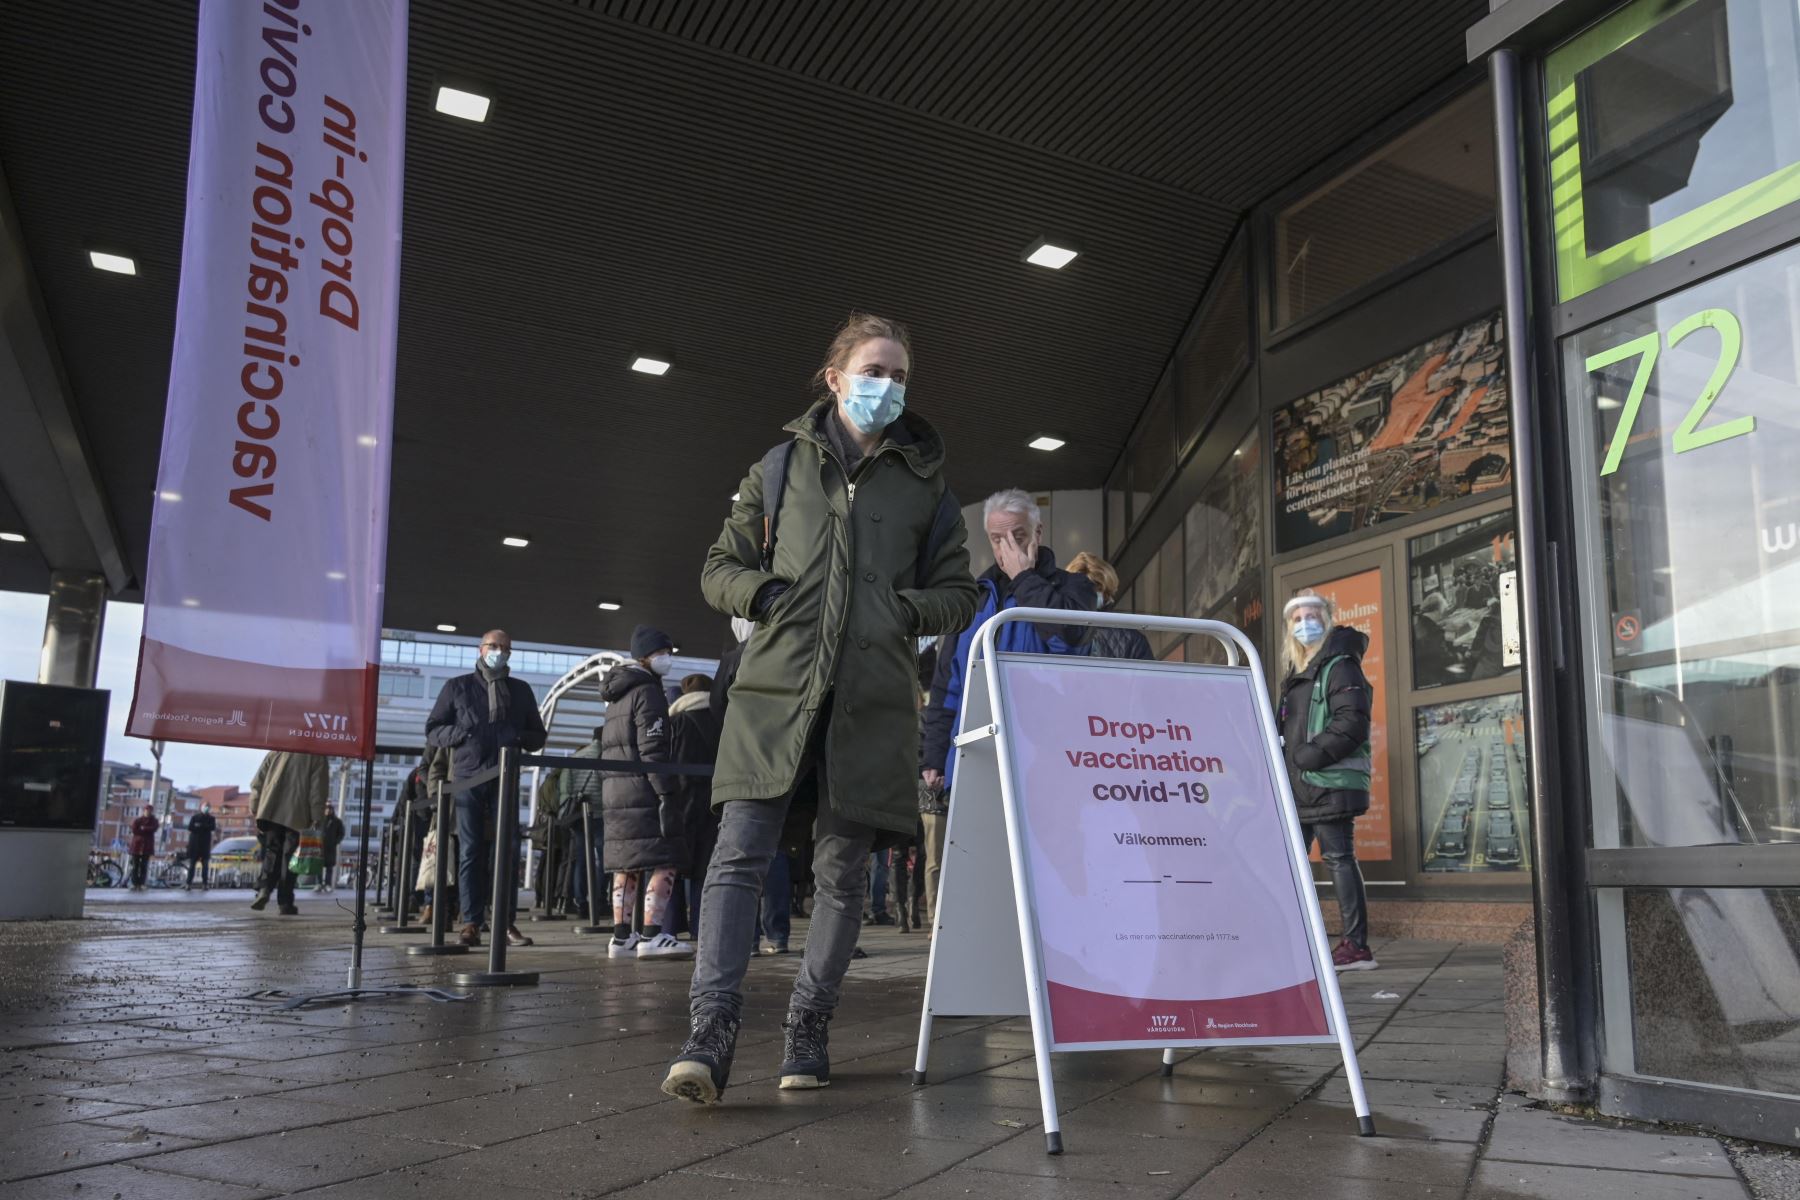 La gente hace cola para recibir una vacuna contra el covid-19 en la estación terminal de la ciudad de Estocolmo, después de que la Agencia de Salud Pública de Suecia anunciara que ahora recomienda reducir el intervalo entre la dosis dos y la tres del covid- 19 vacuna de seis a cinco meses para todos. Foto: AFP